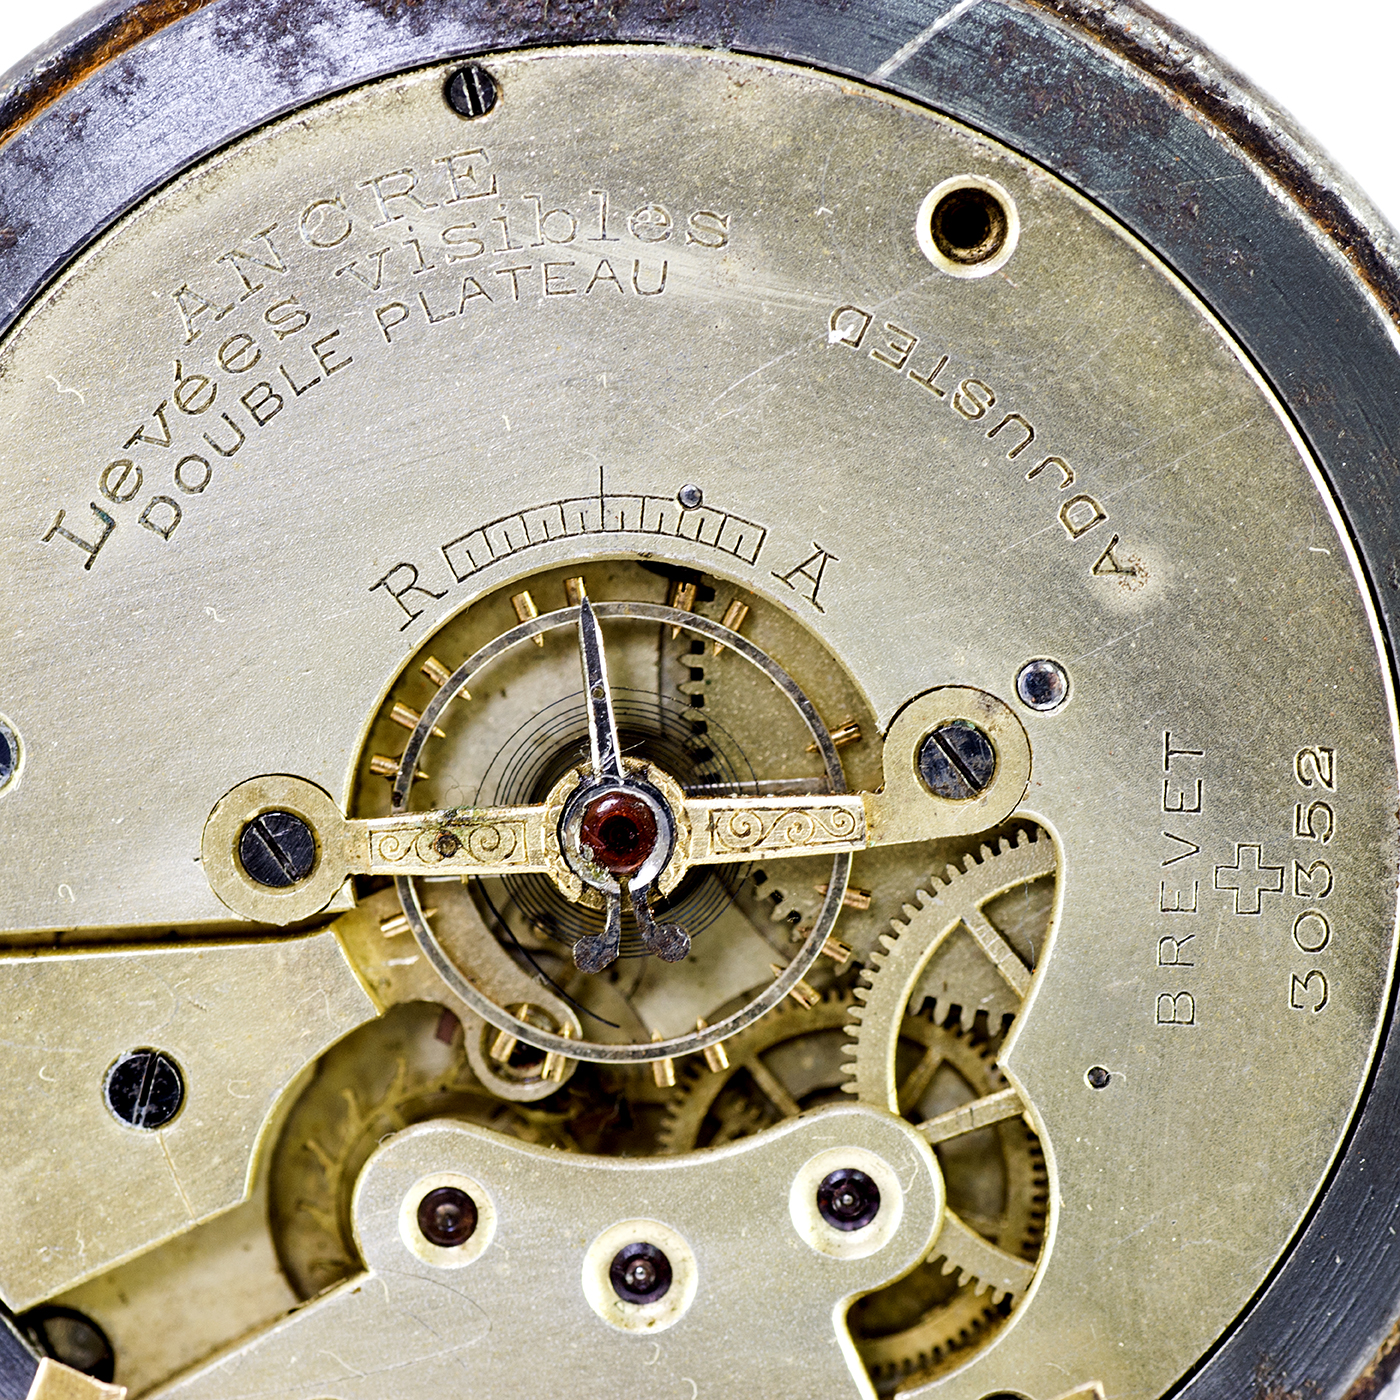 Reloj Suizo de Bolsillo, lepine y remontoir. Suiza, ca. 1900.